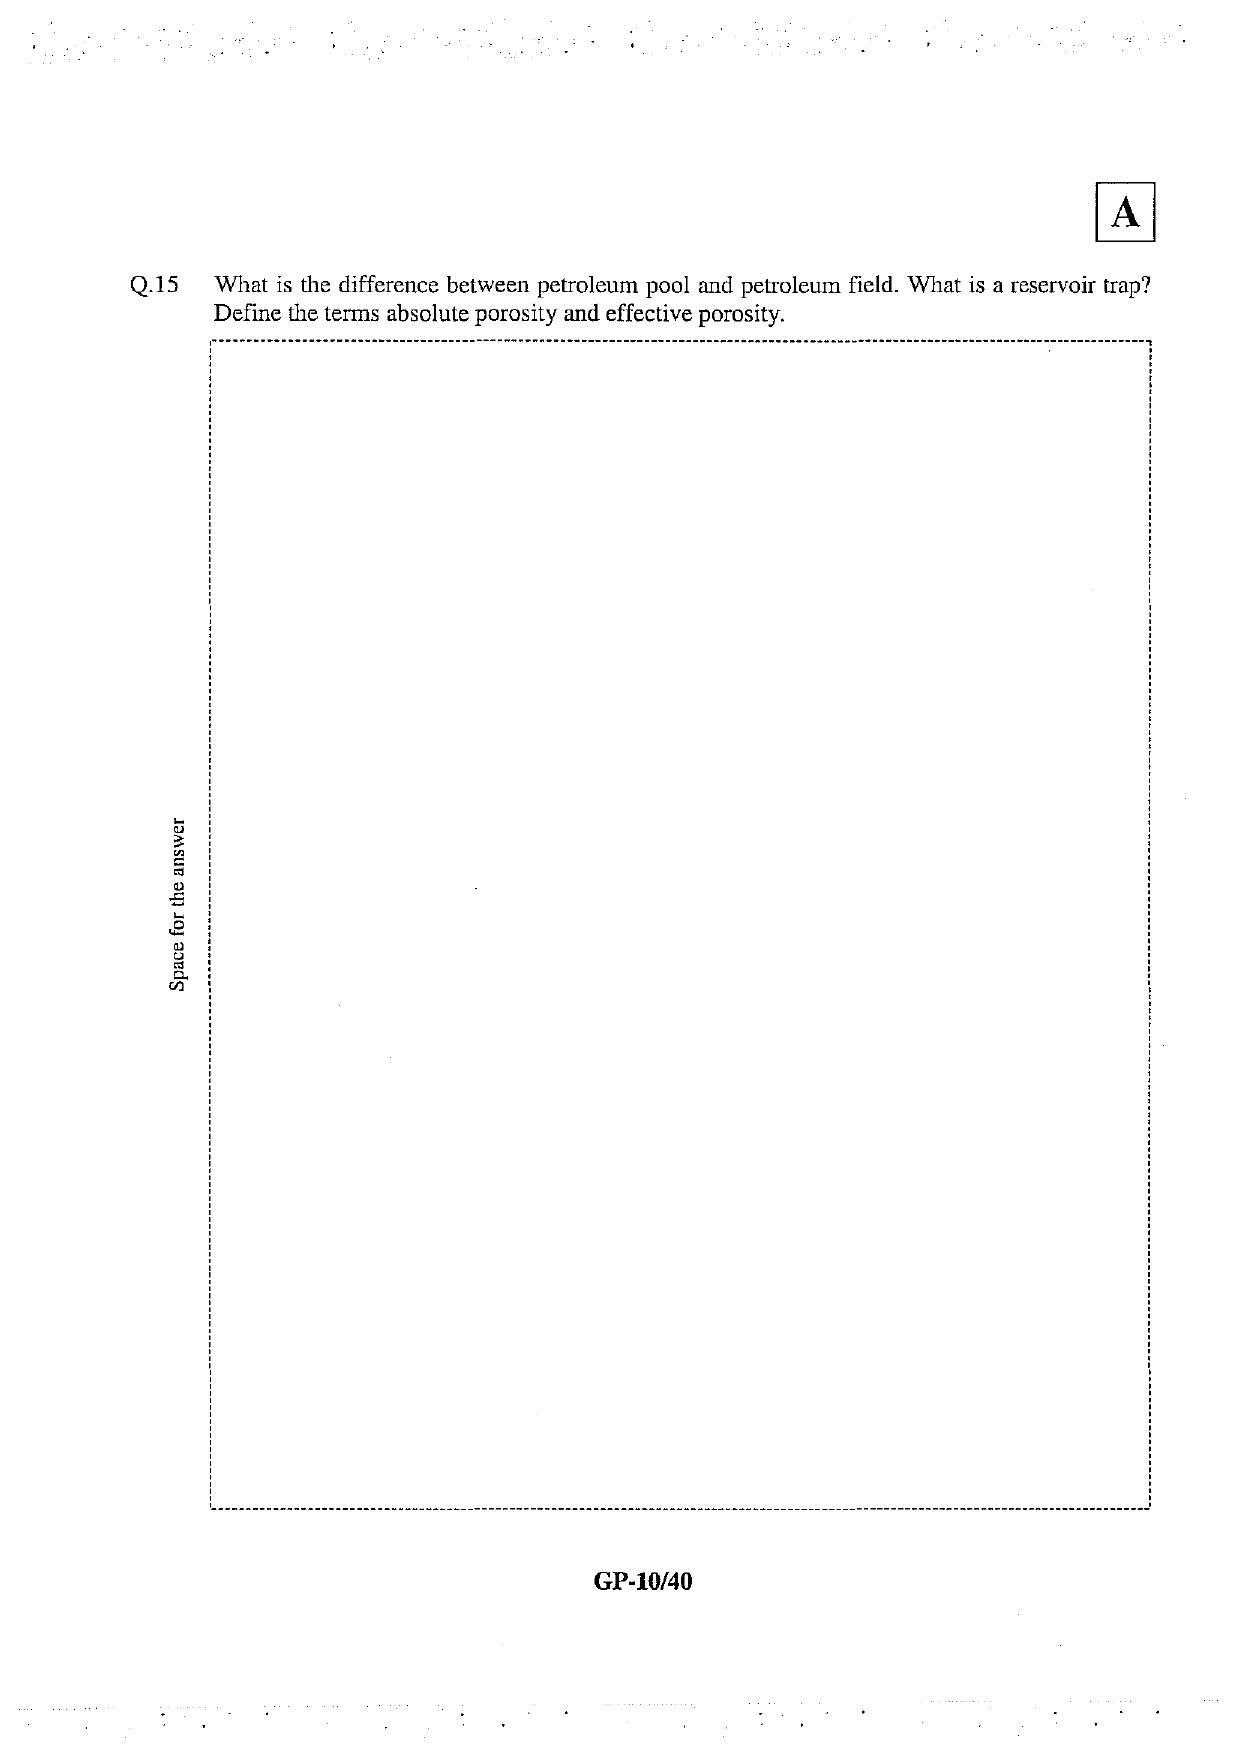 JAM 2013: GP Question Paper - Page 11